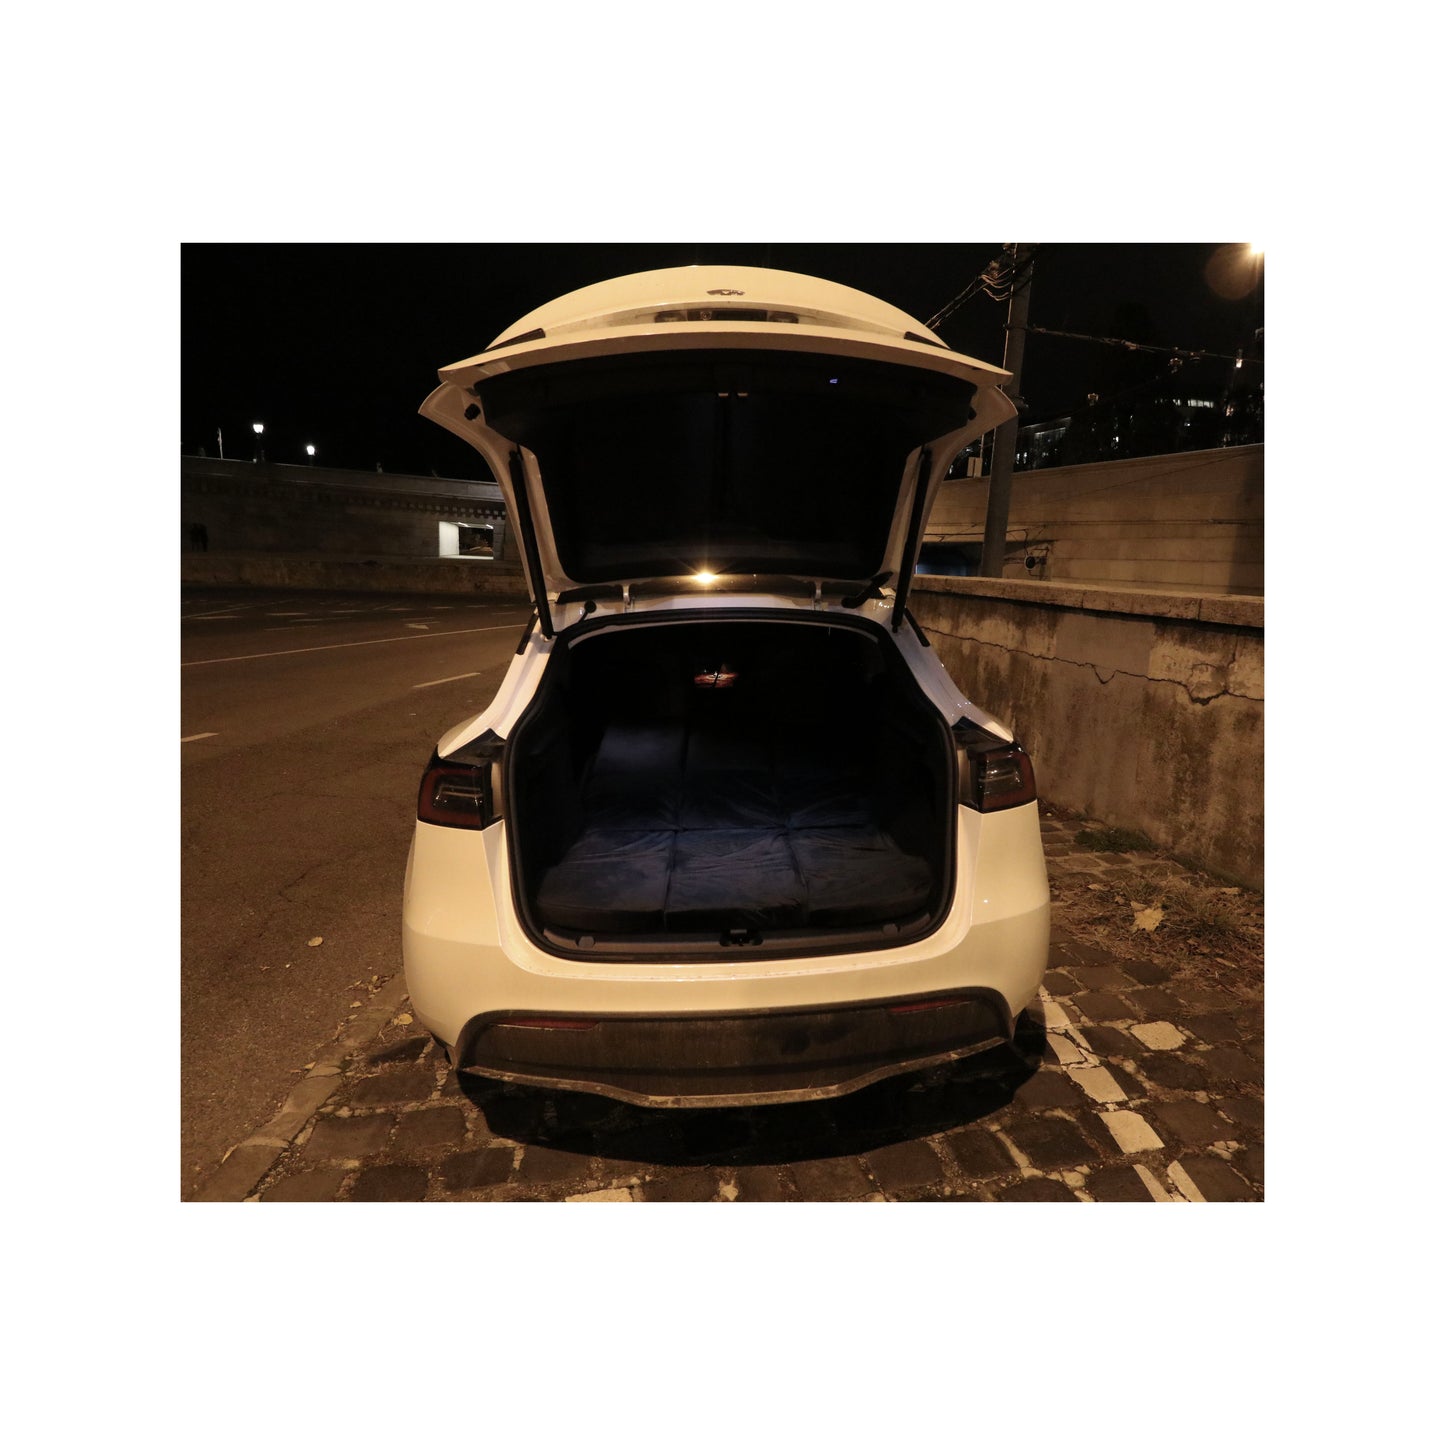 EV-MATS Deluxe CAMP SET Tesla Model 3-hoz, Tesla matraccal, vízálló táskával a hátsó csomagtérbe, szatén lepedővel, paplannal, 2 párnával huzattal, 11 árnyékolóval és 2 vízálló táskával a Tesla Model 3 első csomagtartóba